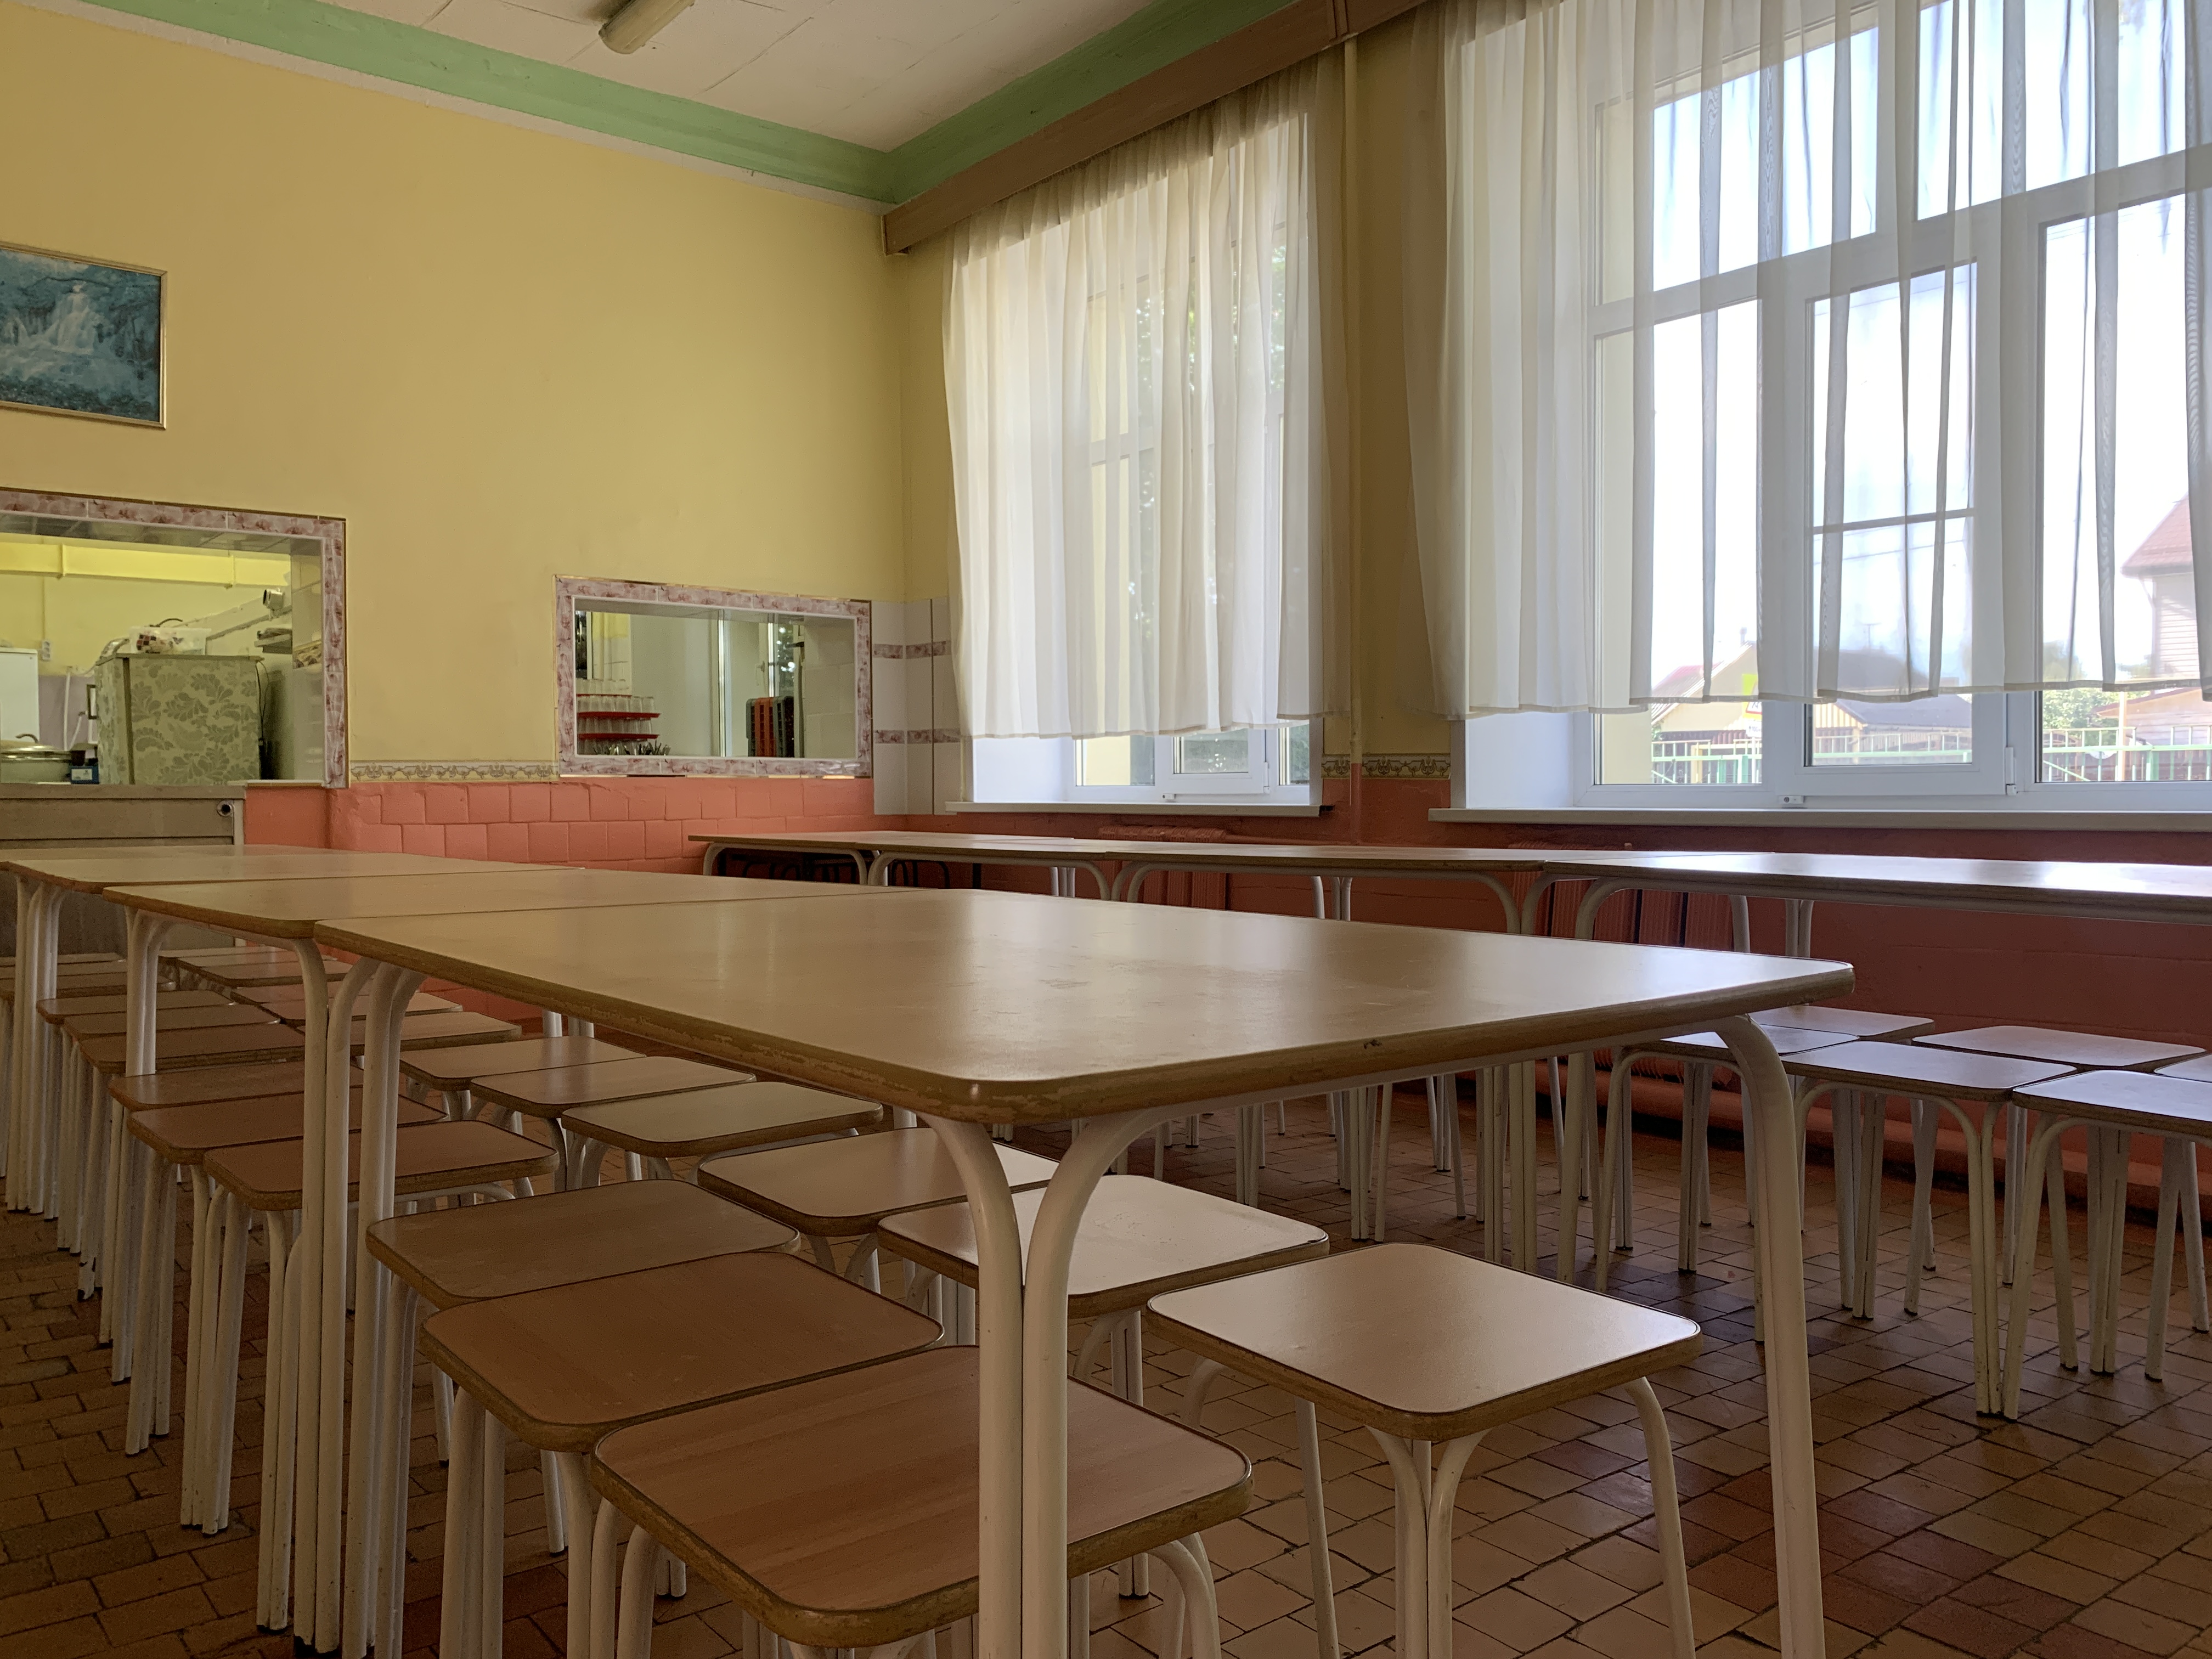 обеденный зал школьной столовой